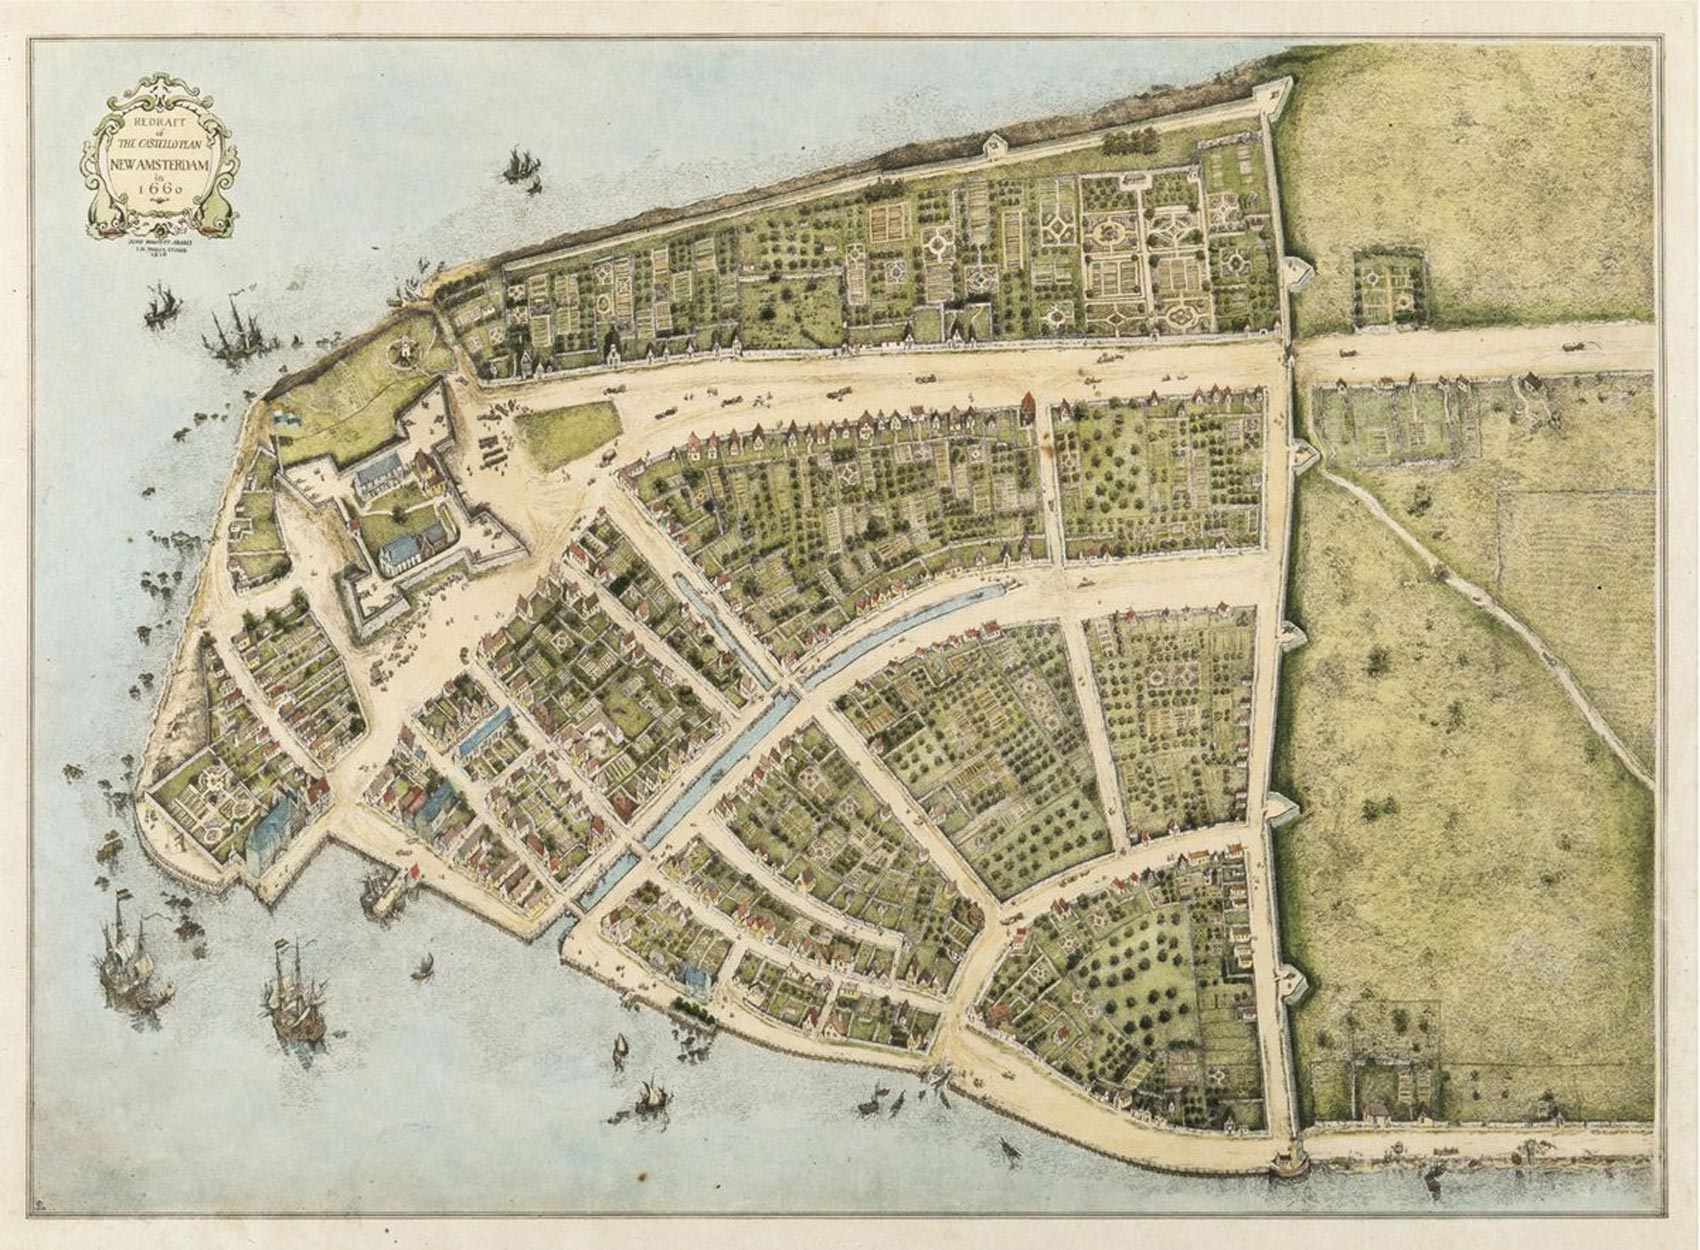 Een oude kaart van Manhattan tijdens de Nederlandse kolonisering van New York